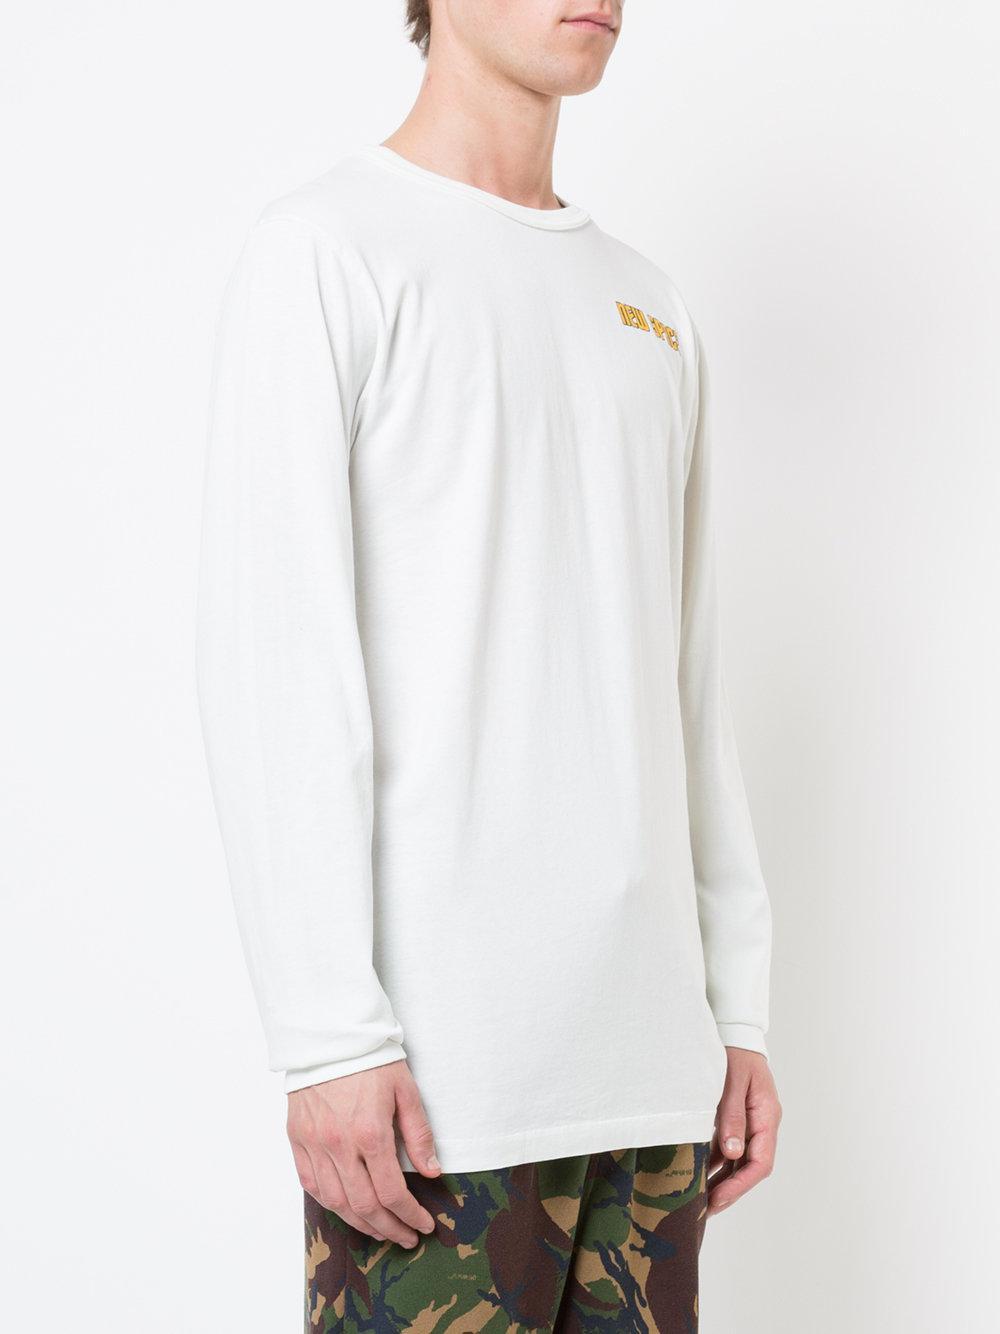 OFF-WHITE™, White Men's T-shirt